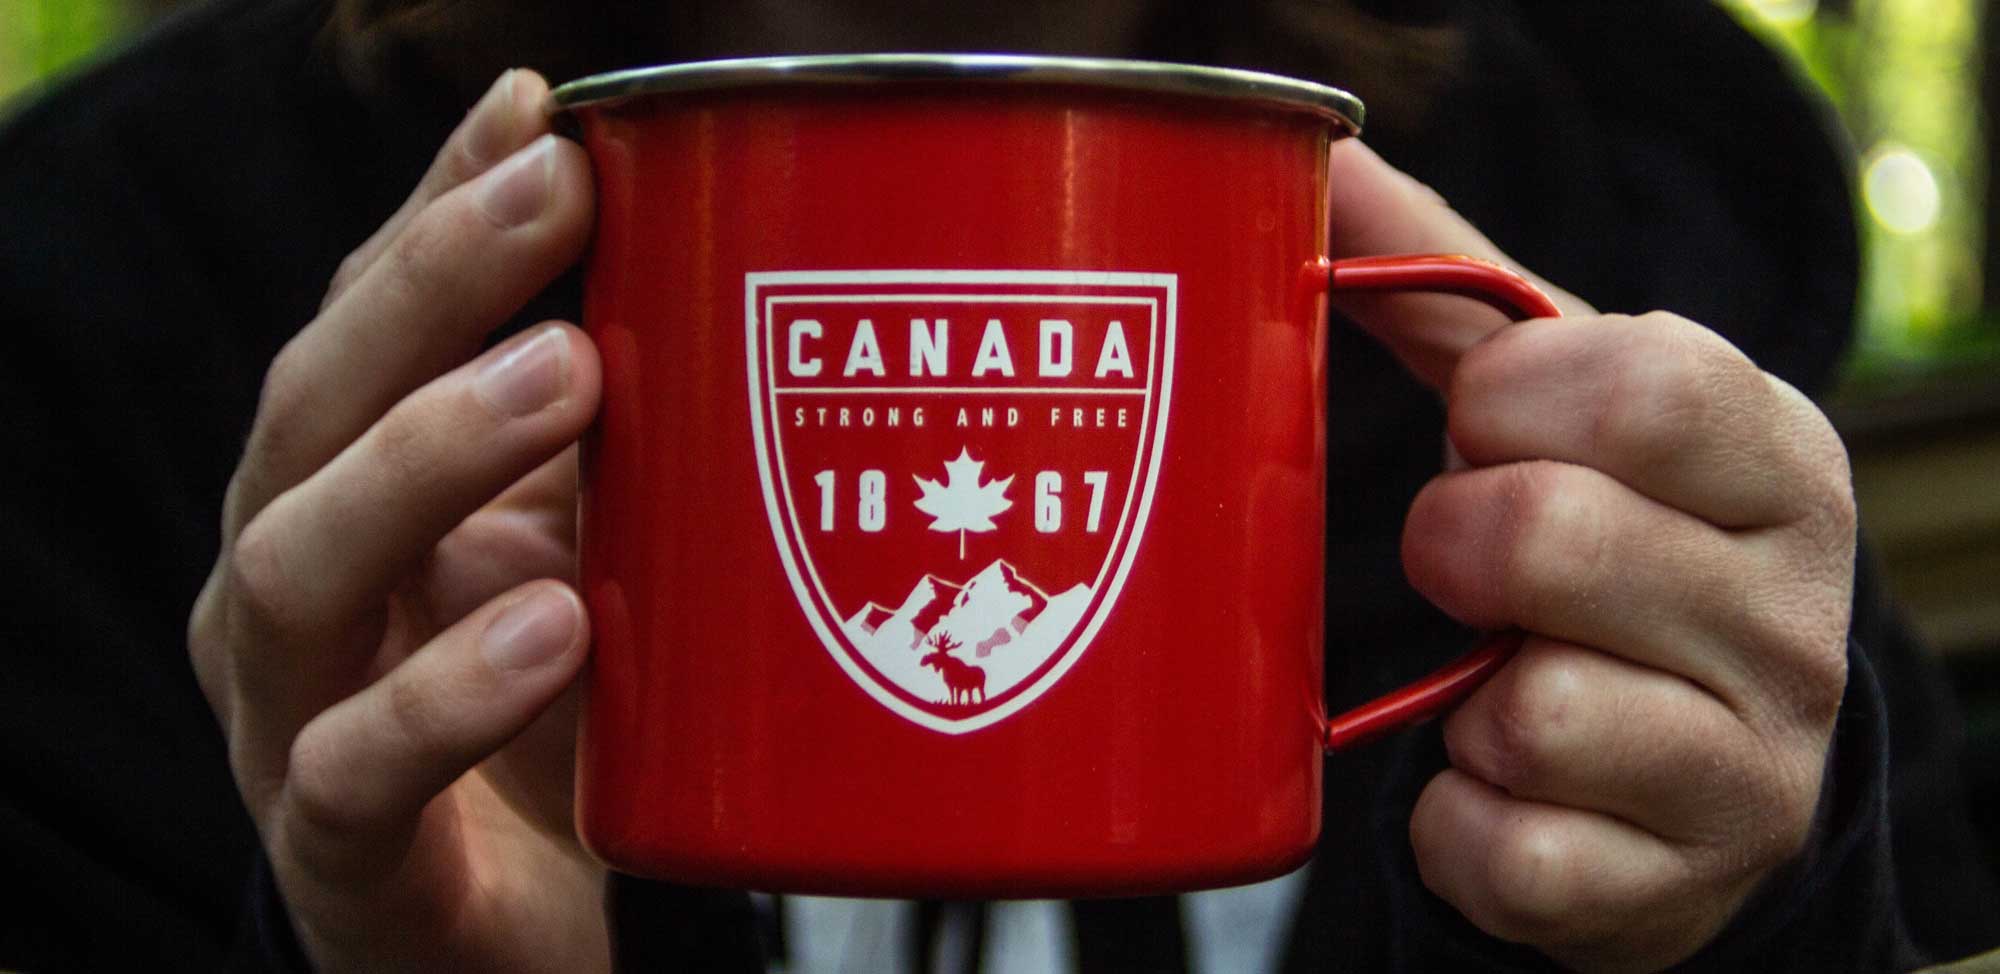 Celebrate Canada Day